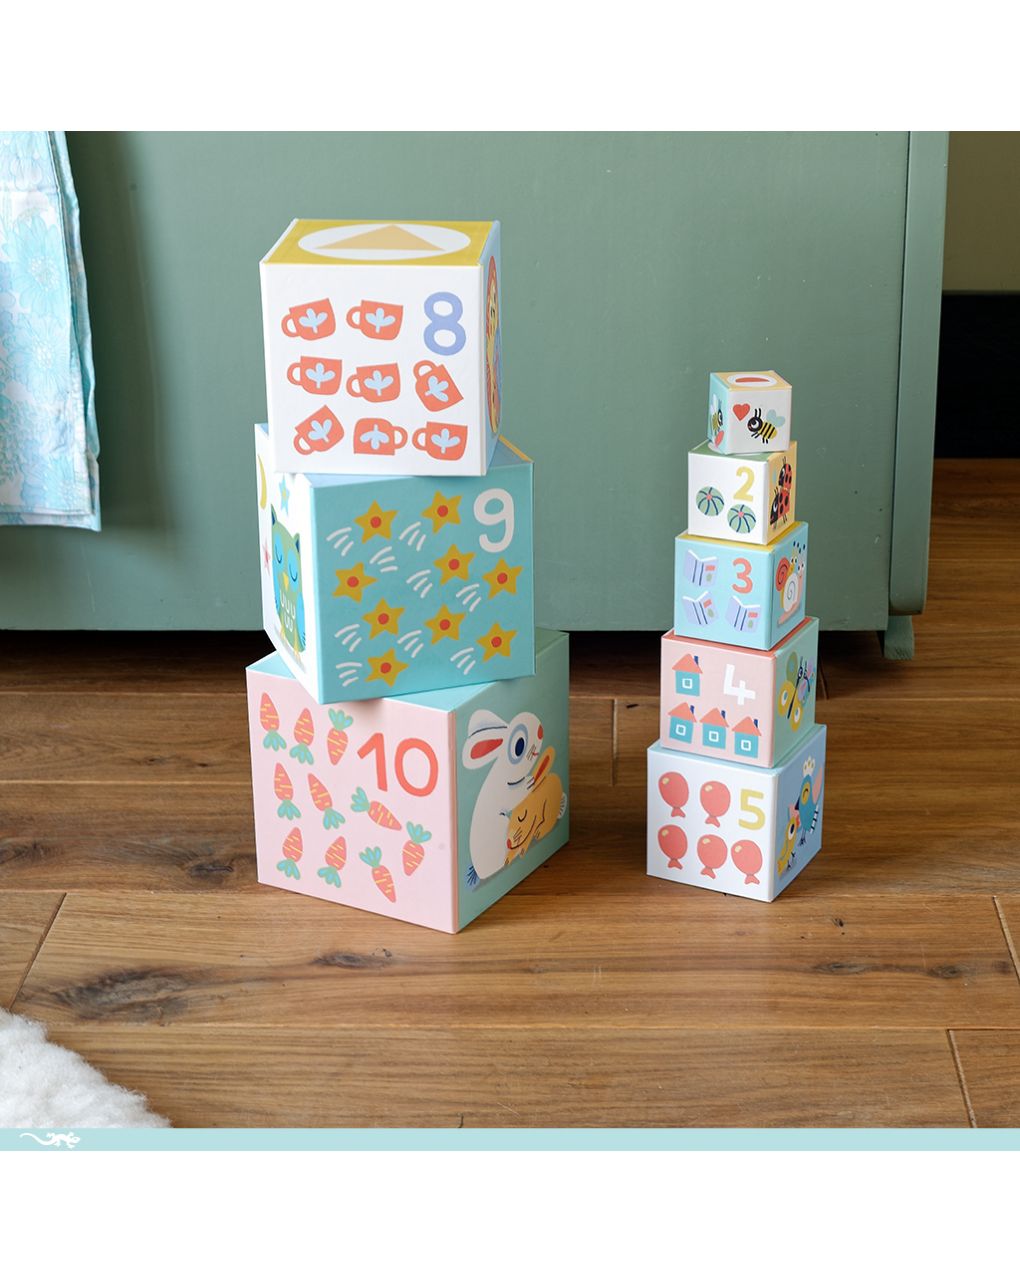 Babybloki 10 cubi sovrapponibili in cartone - djeco - Djeco